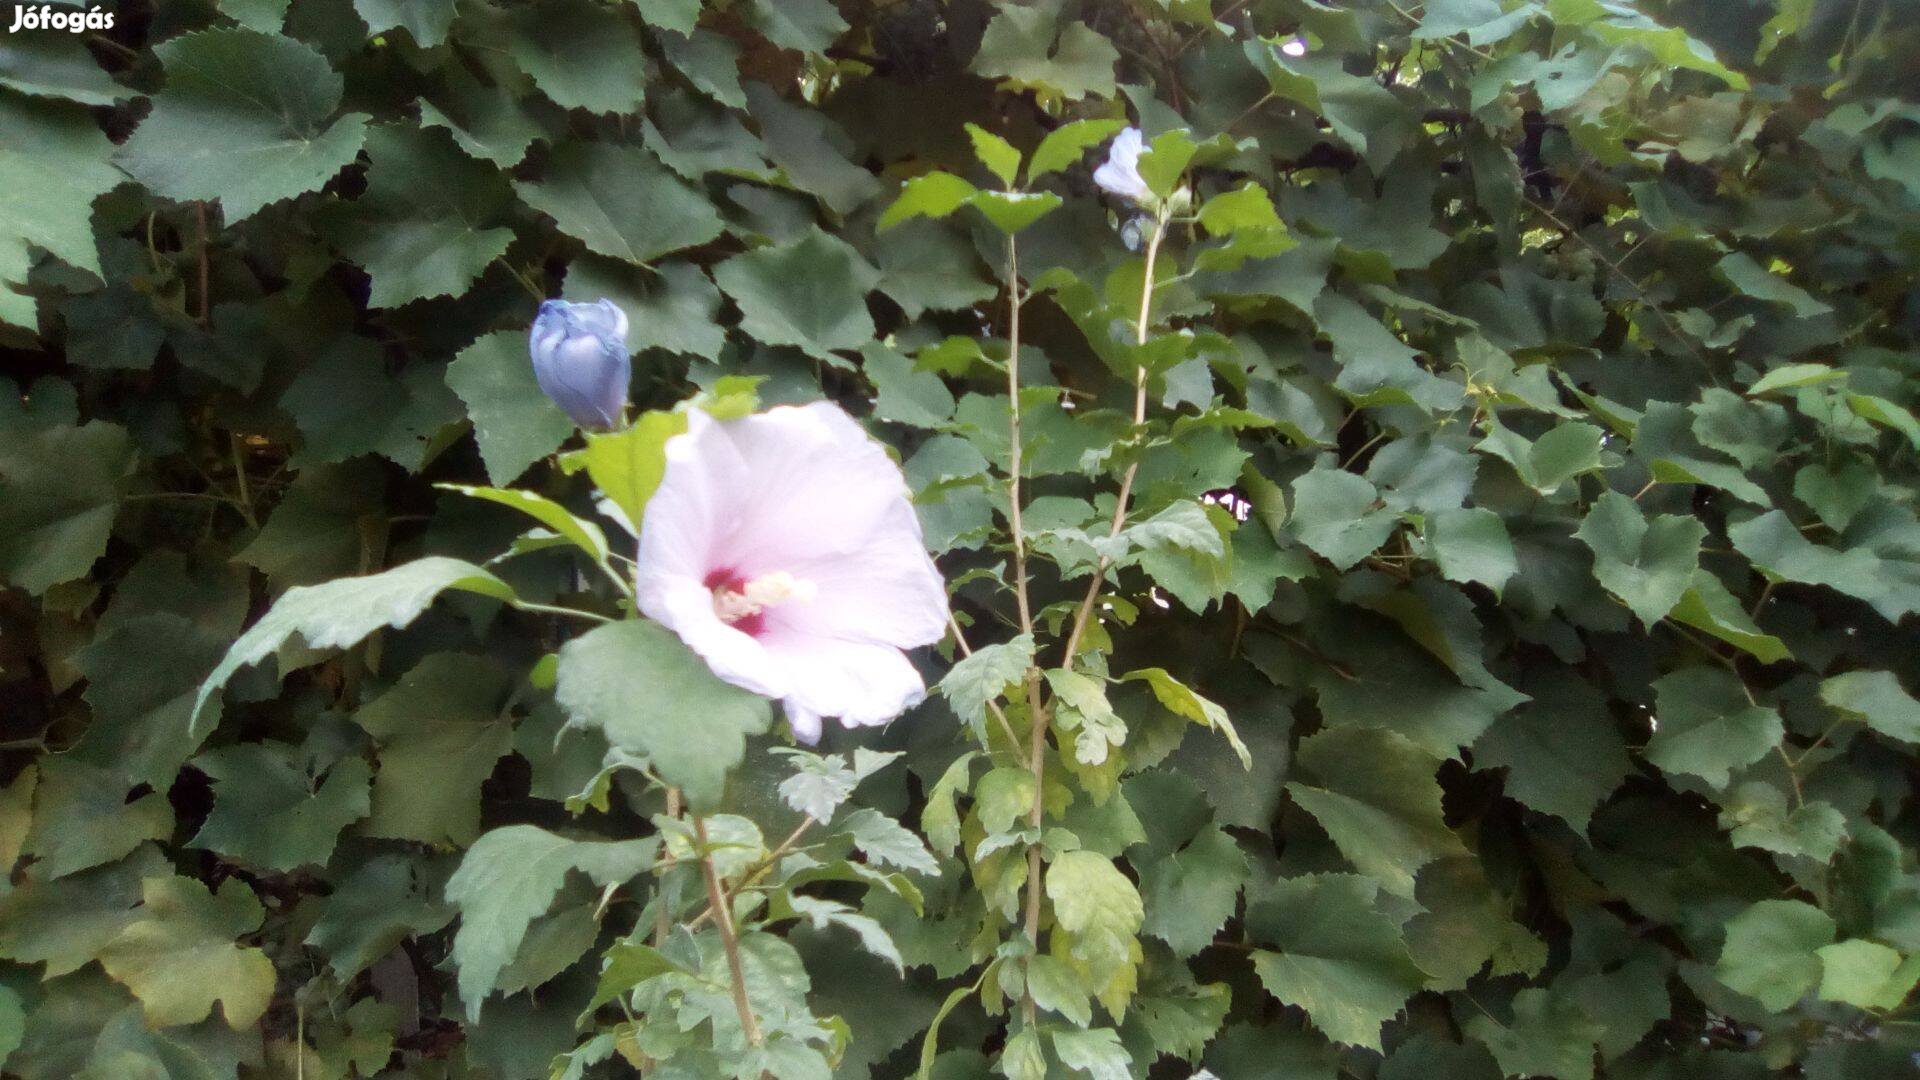 Syr hibiszkusz (mályvacserje) növények fehér és lila színben eladó